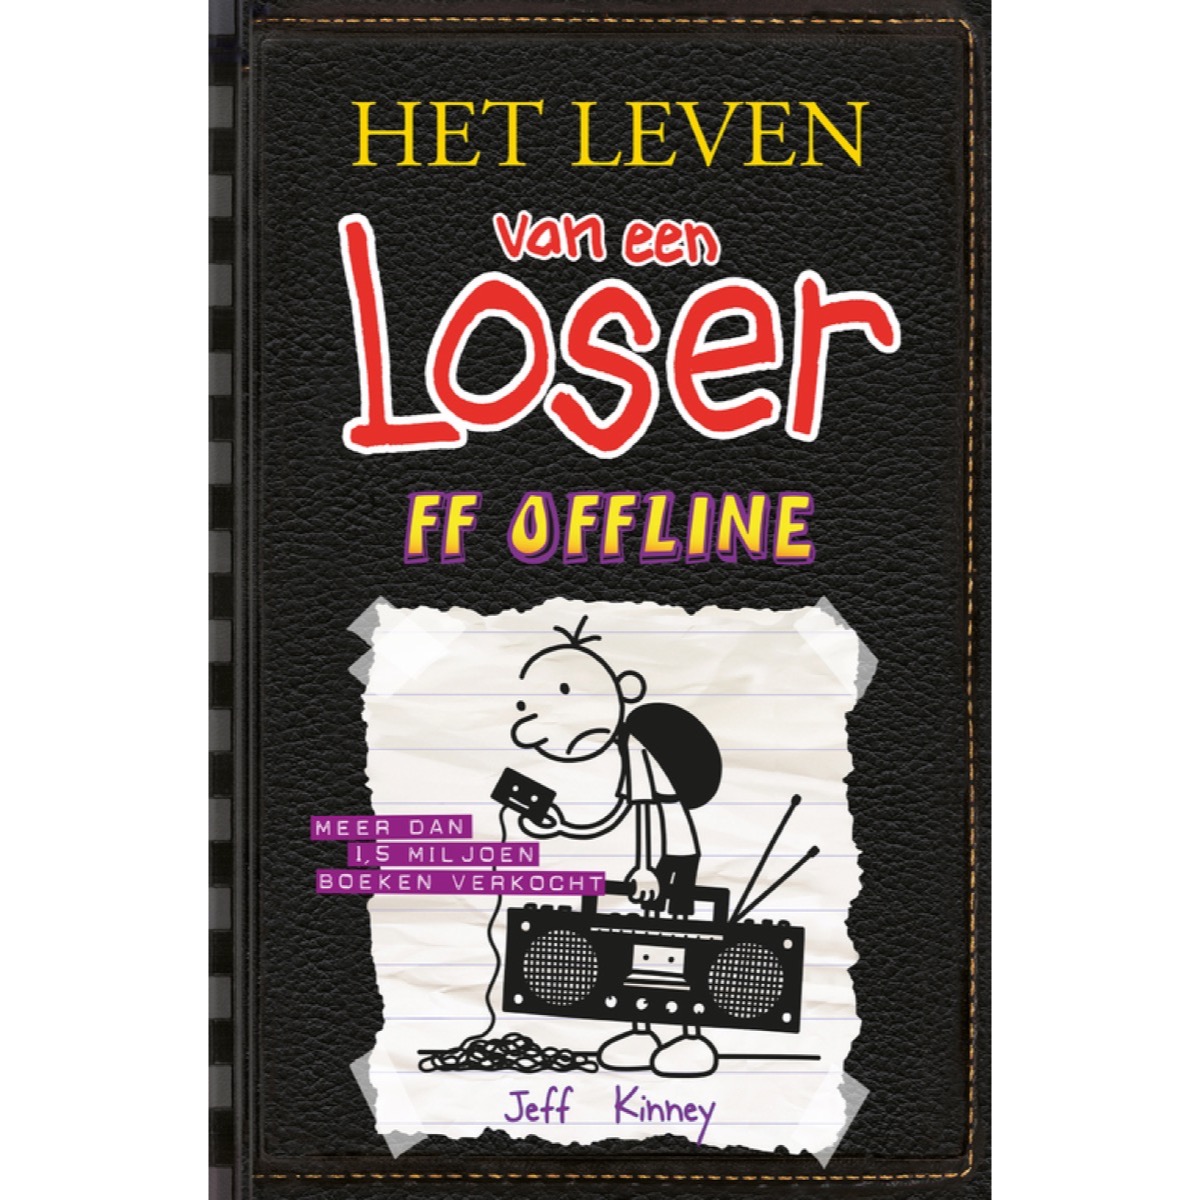 Aannames, aannames. Raad eens timer Madison Het leven van een Loser (FF offline) - Jeff Kinney • Bruna Colmschate &  Deventer